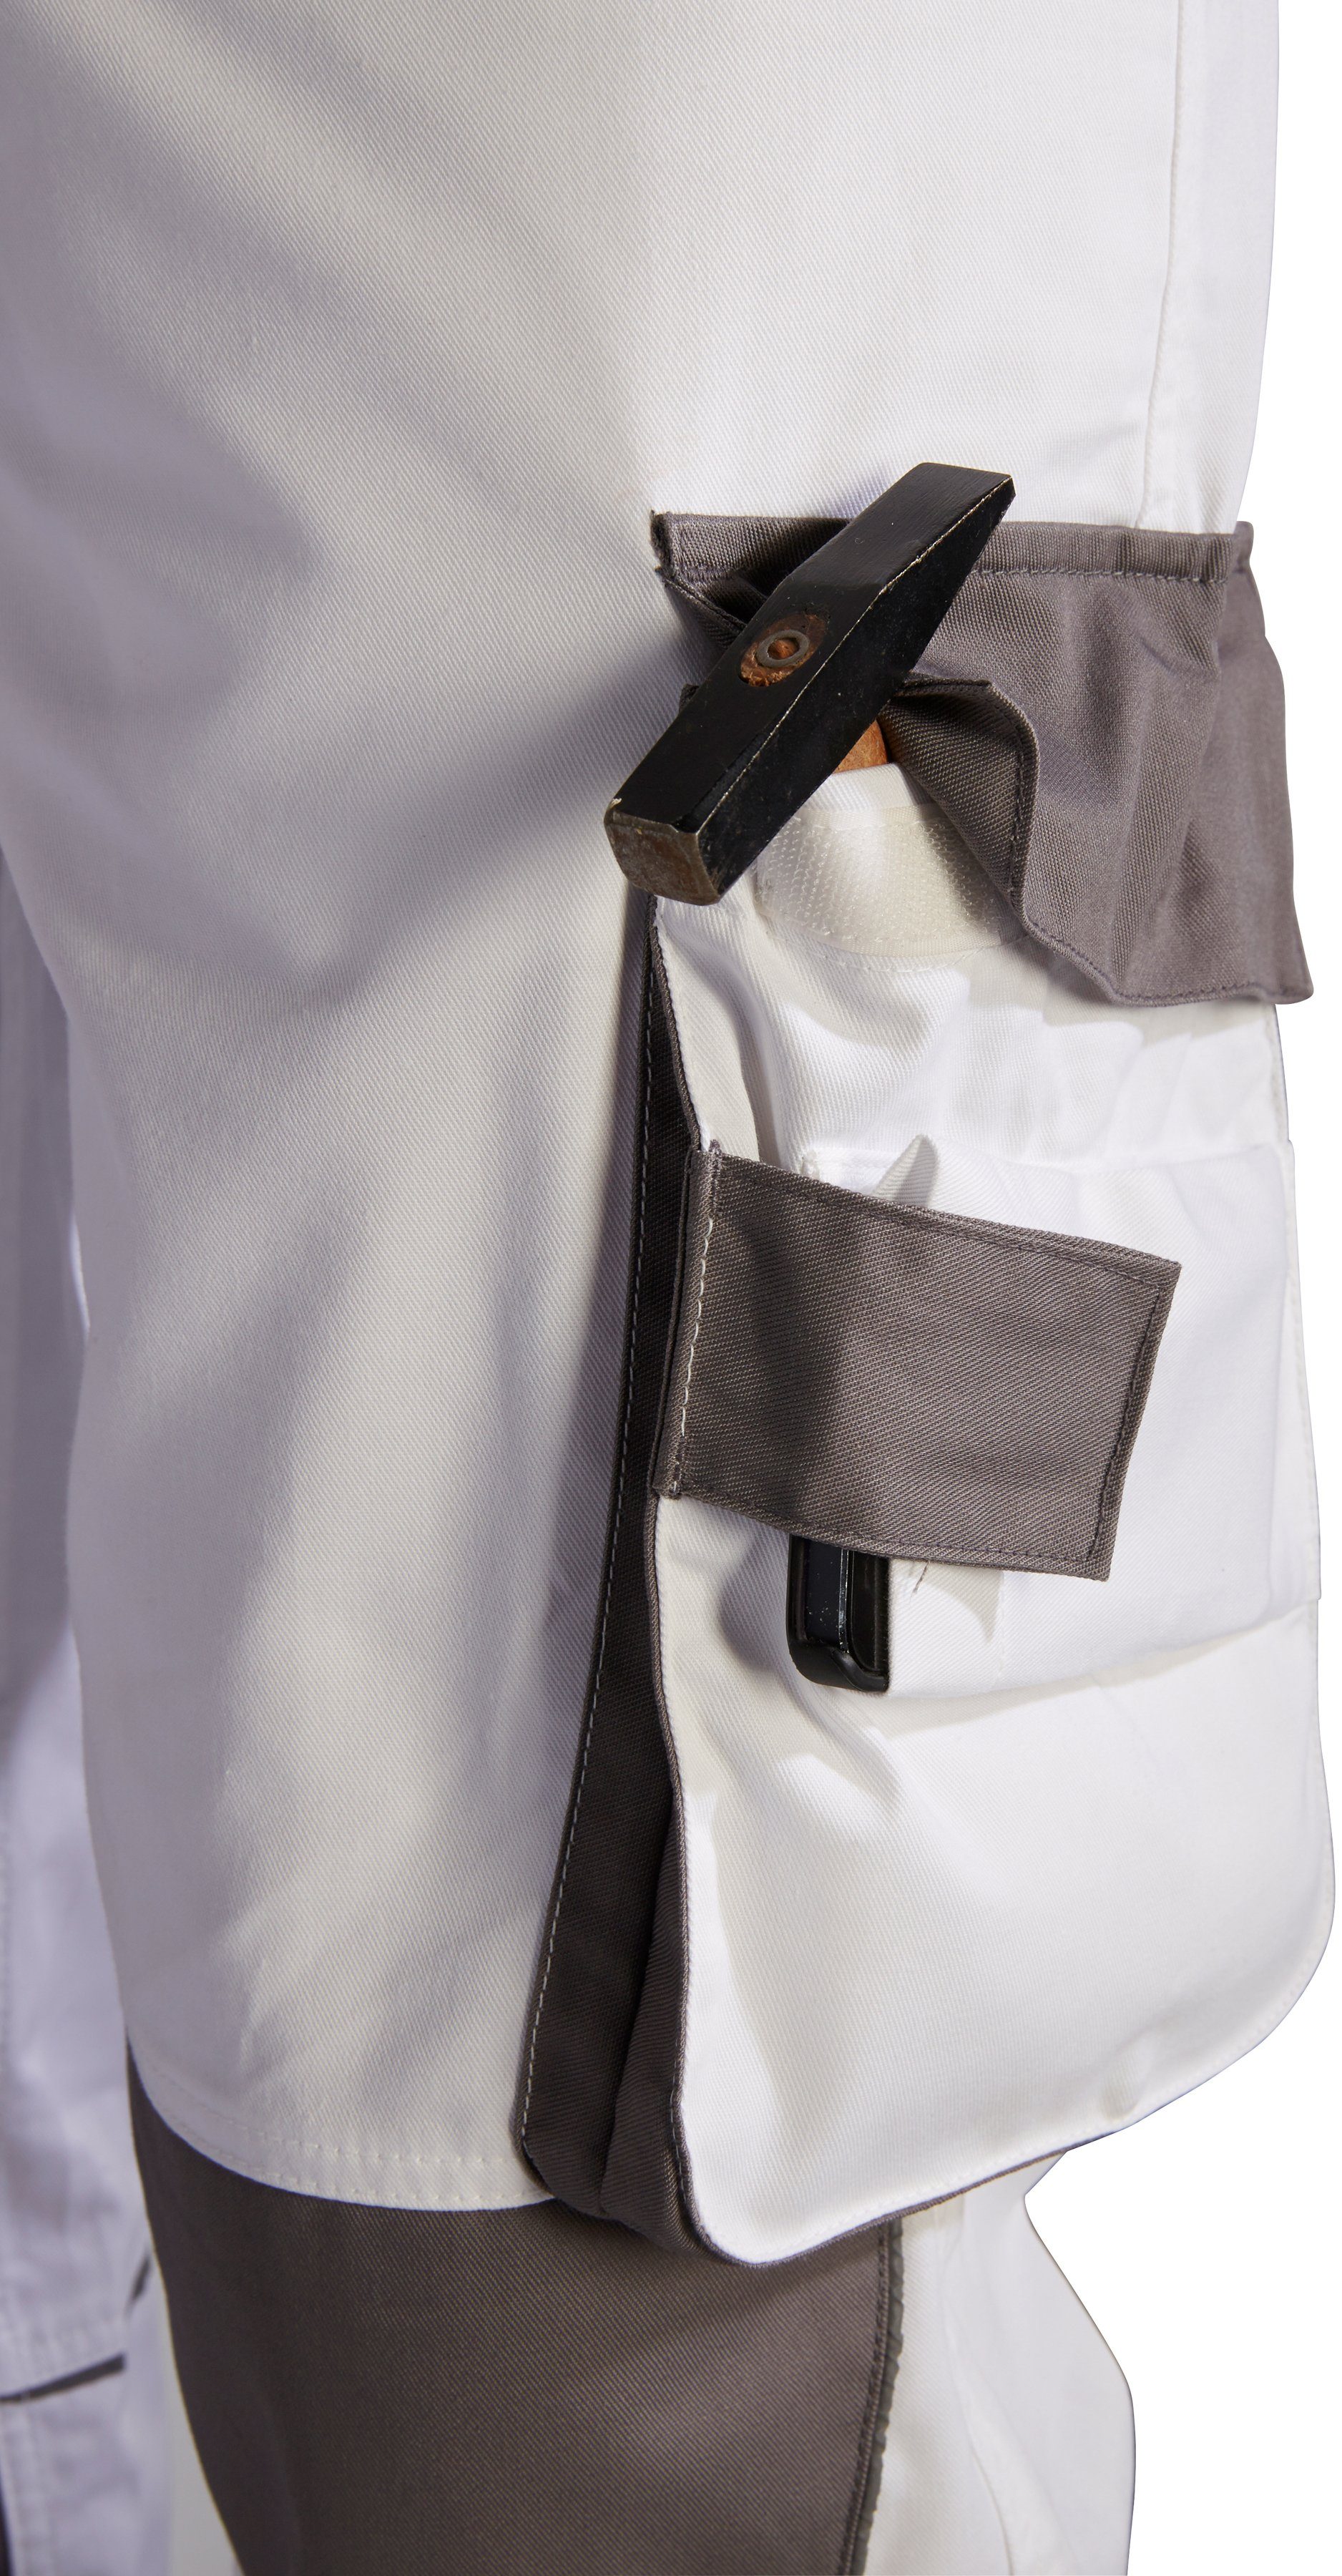 Arbeitsjacke grau-weiß 6 Taschen more safety& 2er-Set, Extreme+